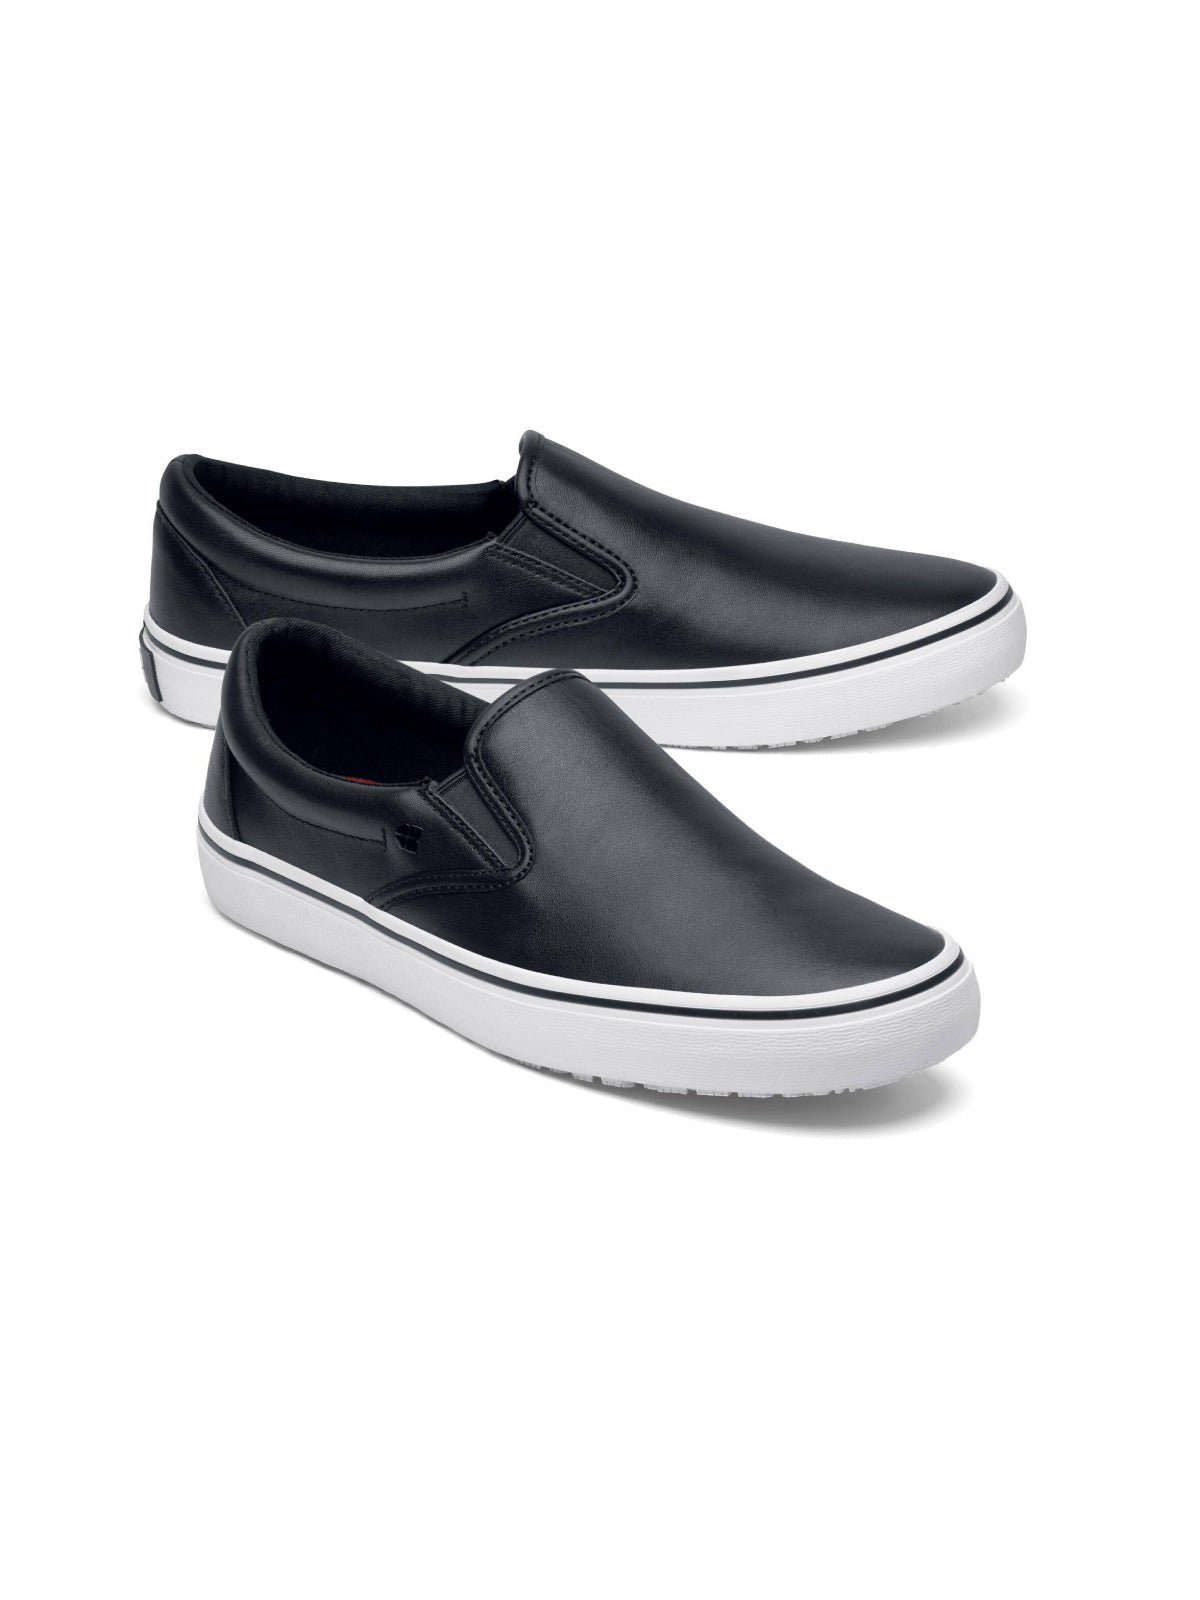 Unisex Work Shoe Merlin Black & White